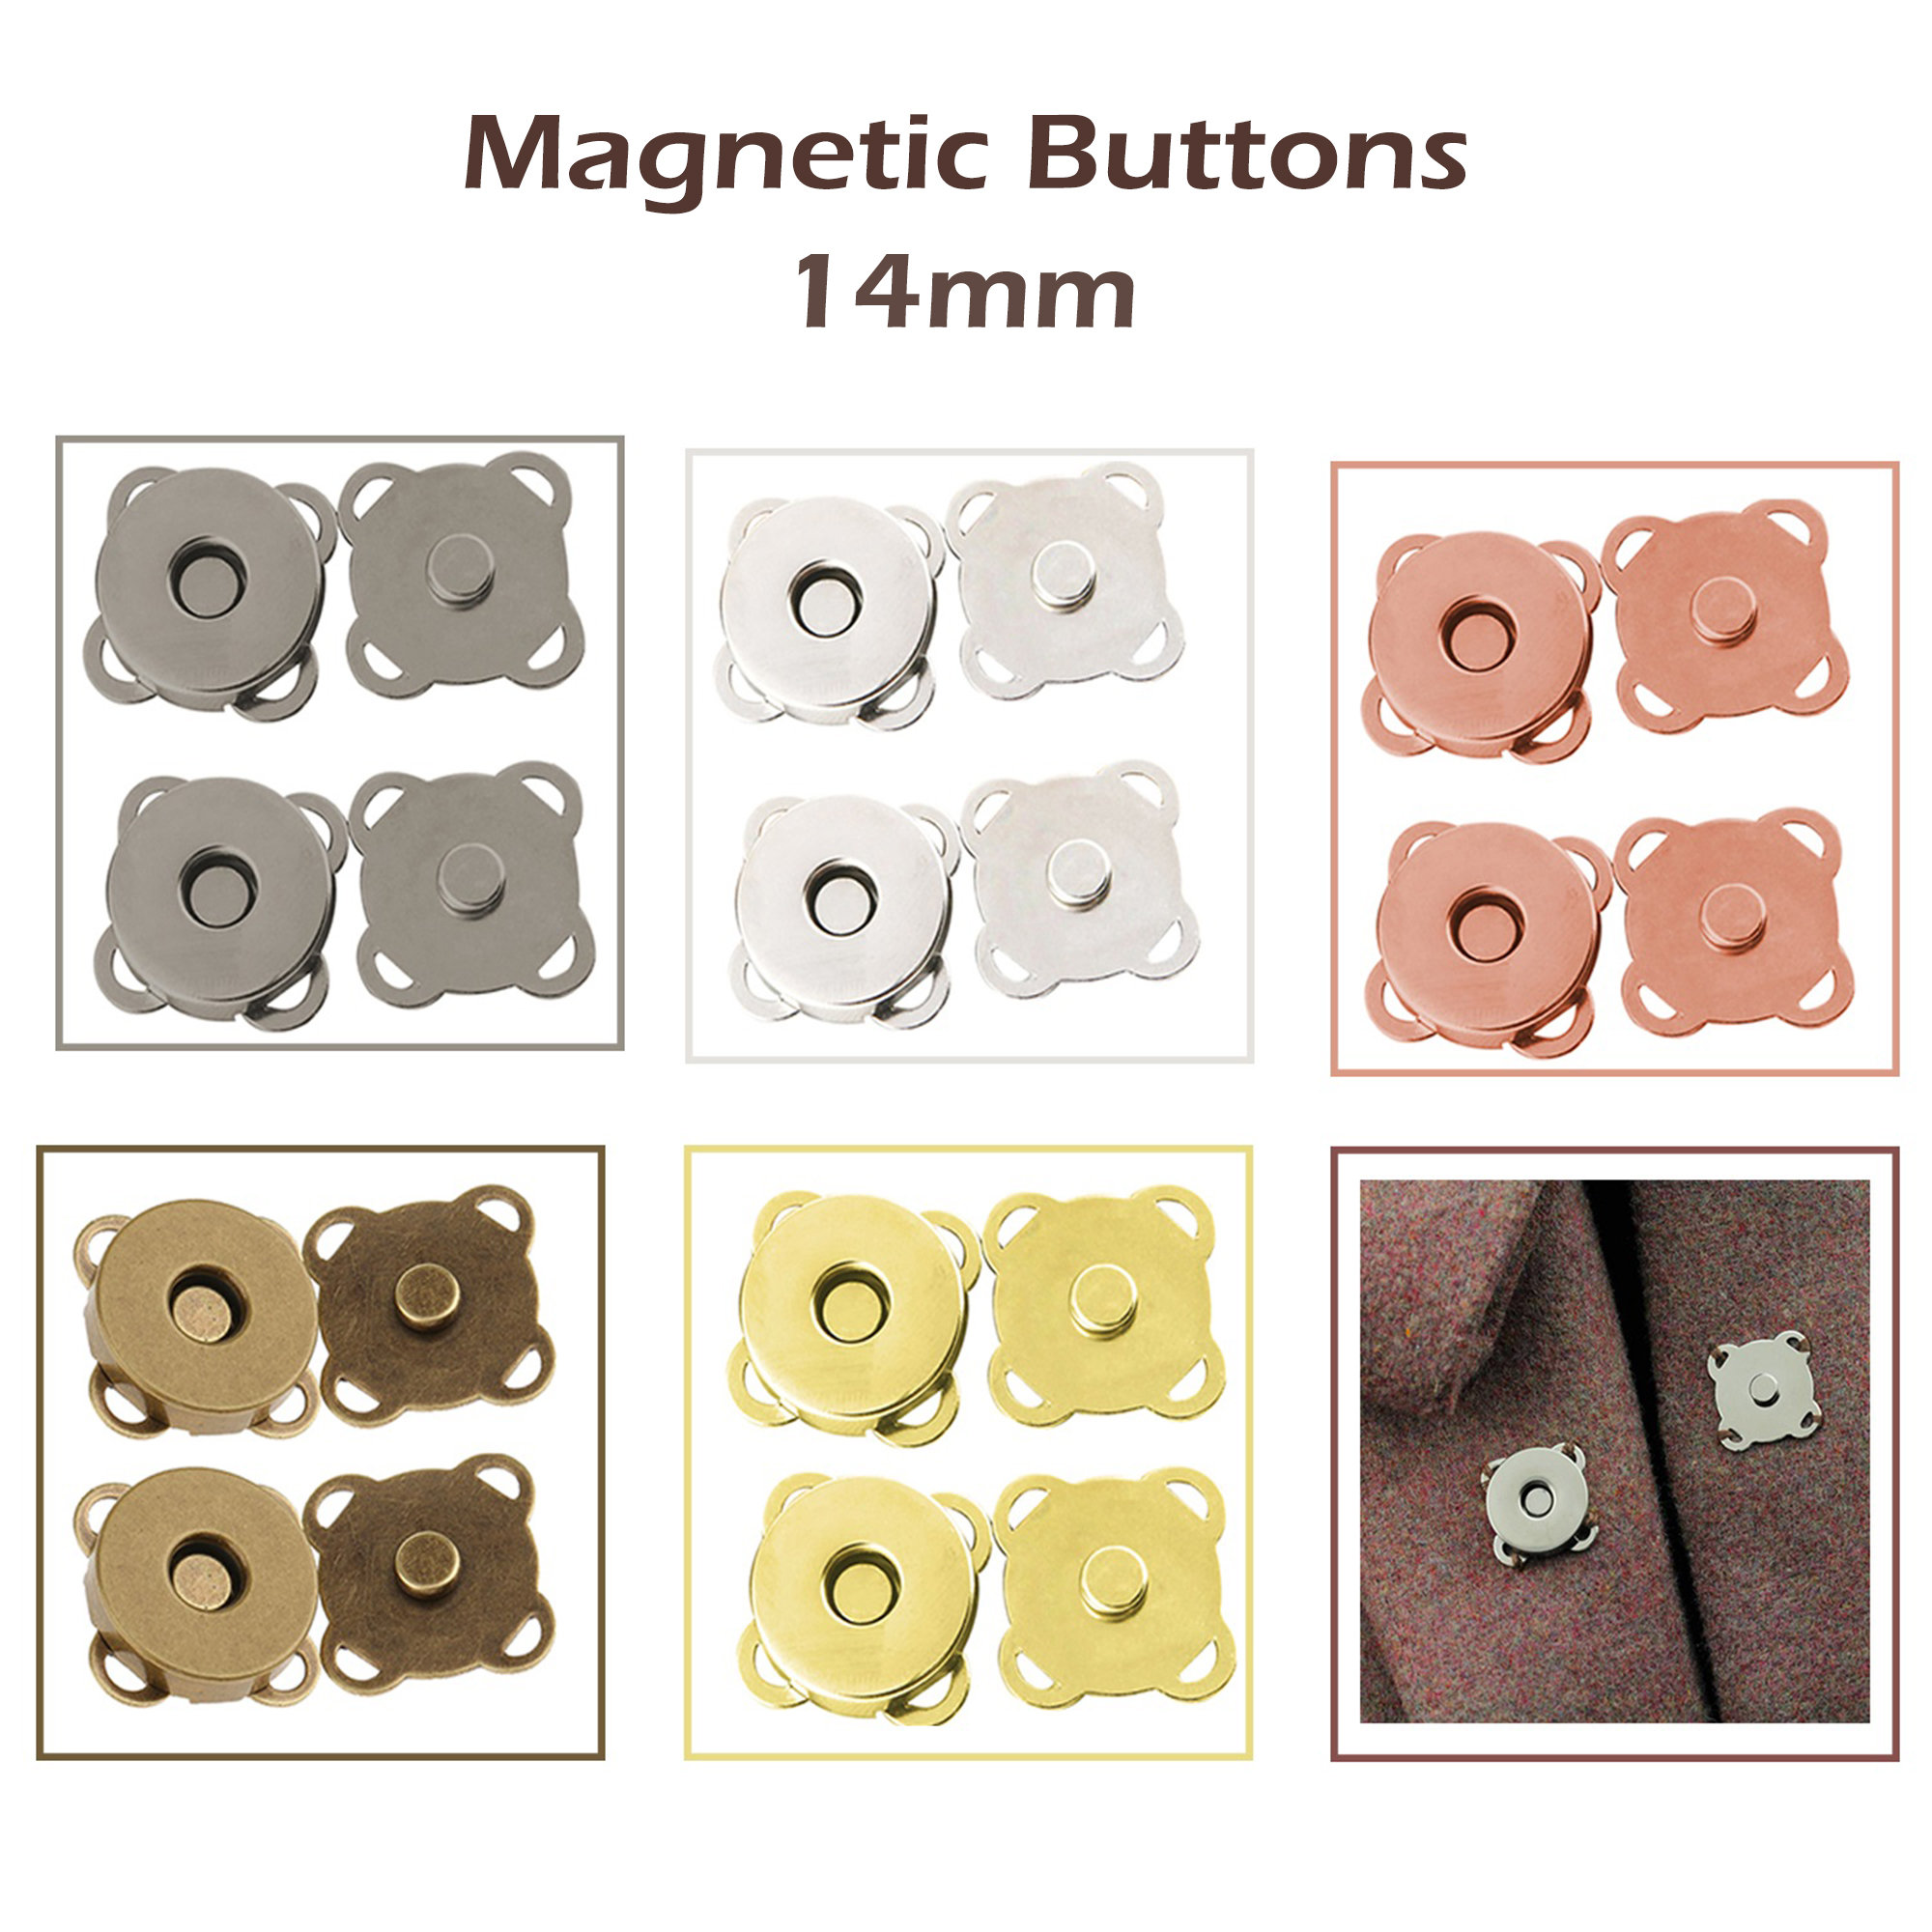 20pcs Broches Magnéticos Botones a de Imán mm para Coser